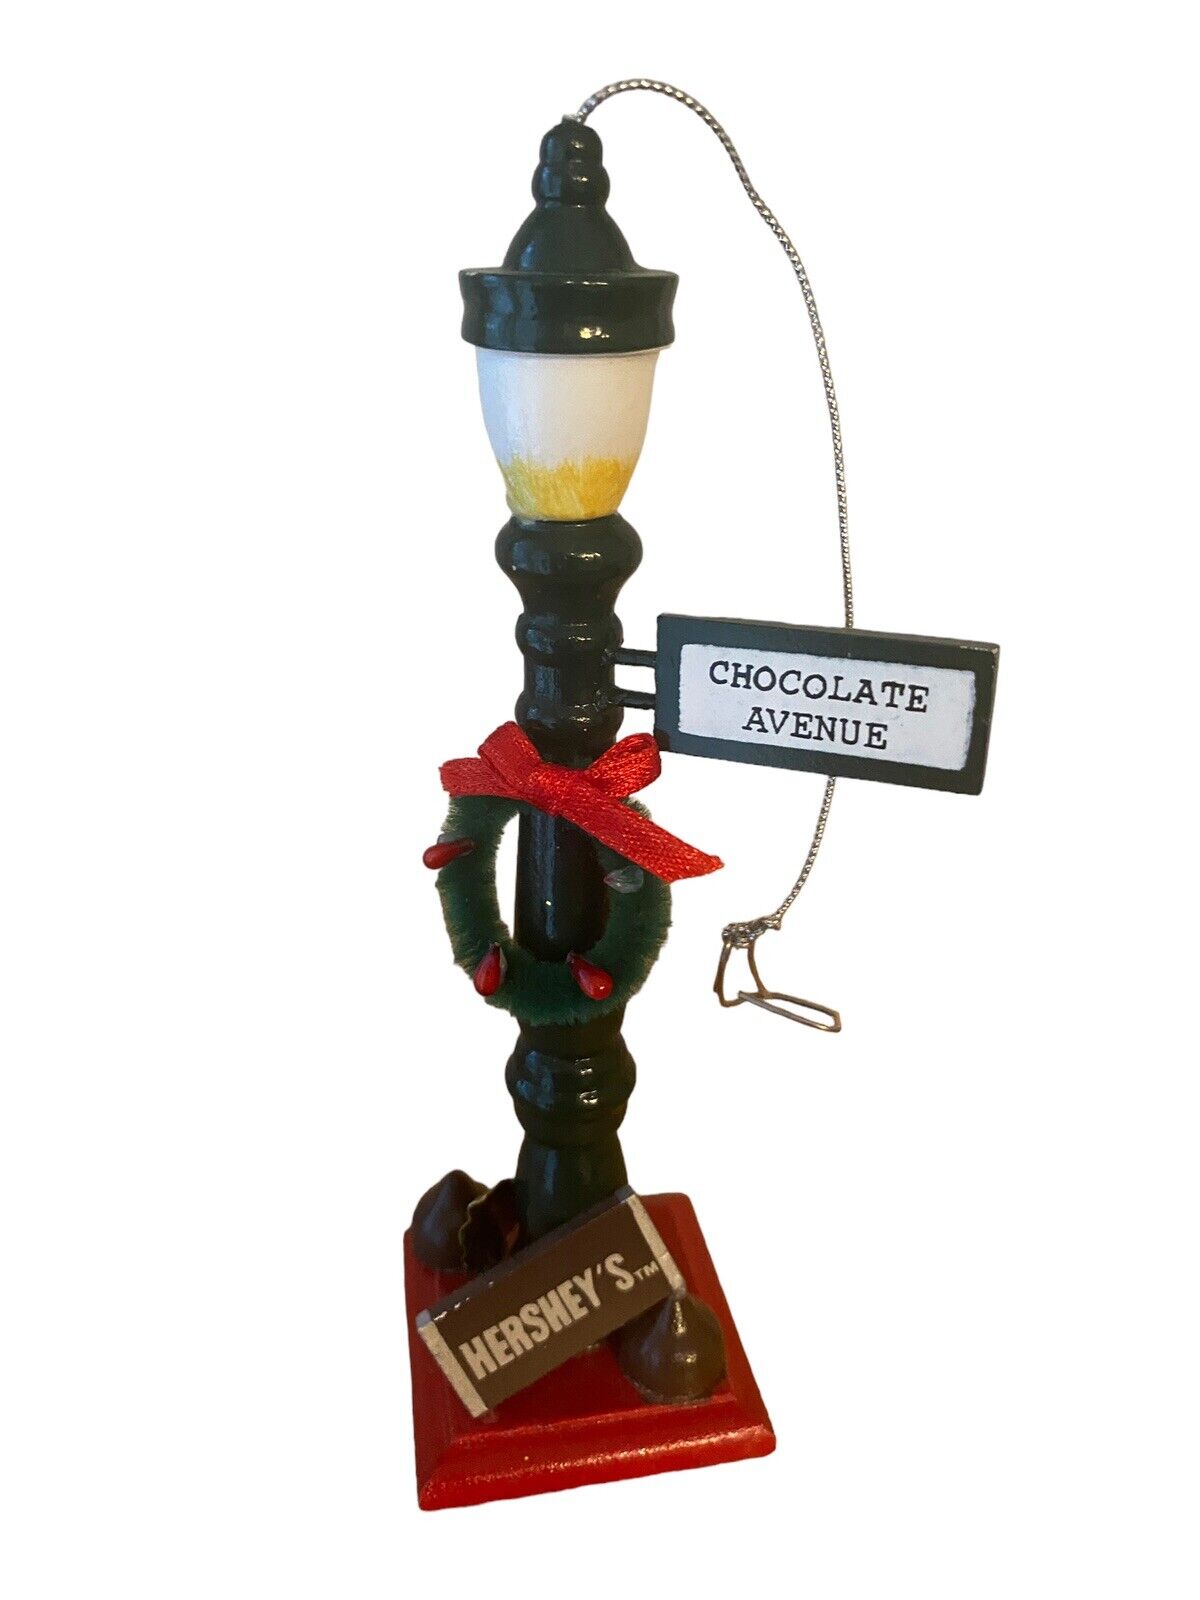 Hershey Chocolate Avenue Ornament Lamppost Kurt Adler 1996 Chocolate World